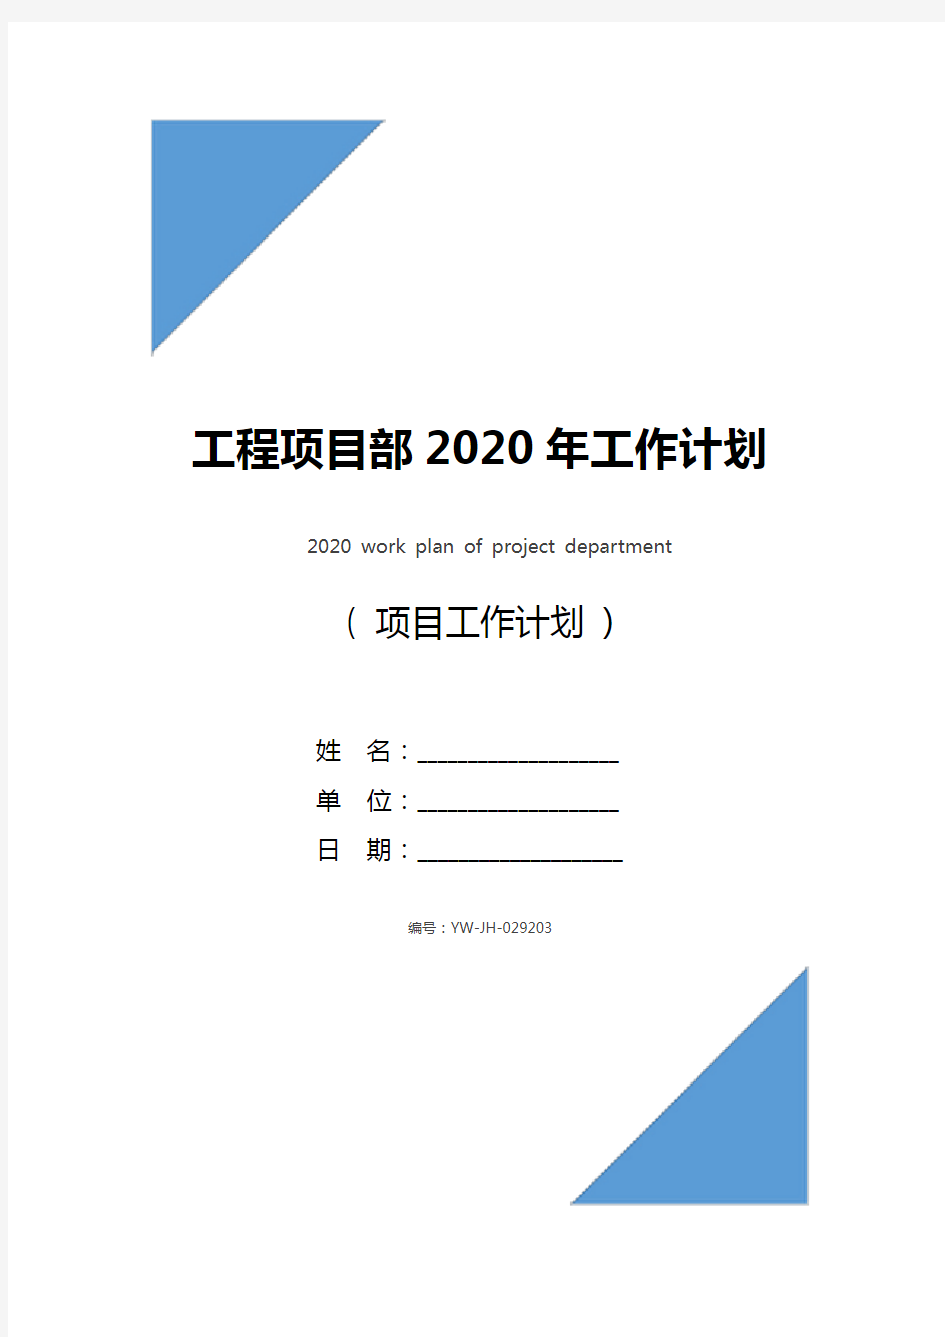 工程项目部2020年工作计划